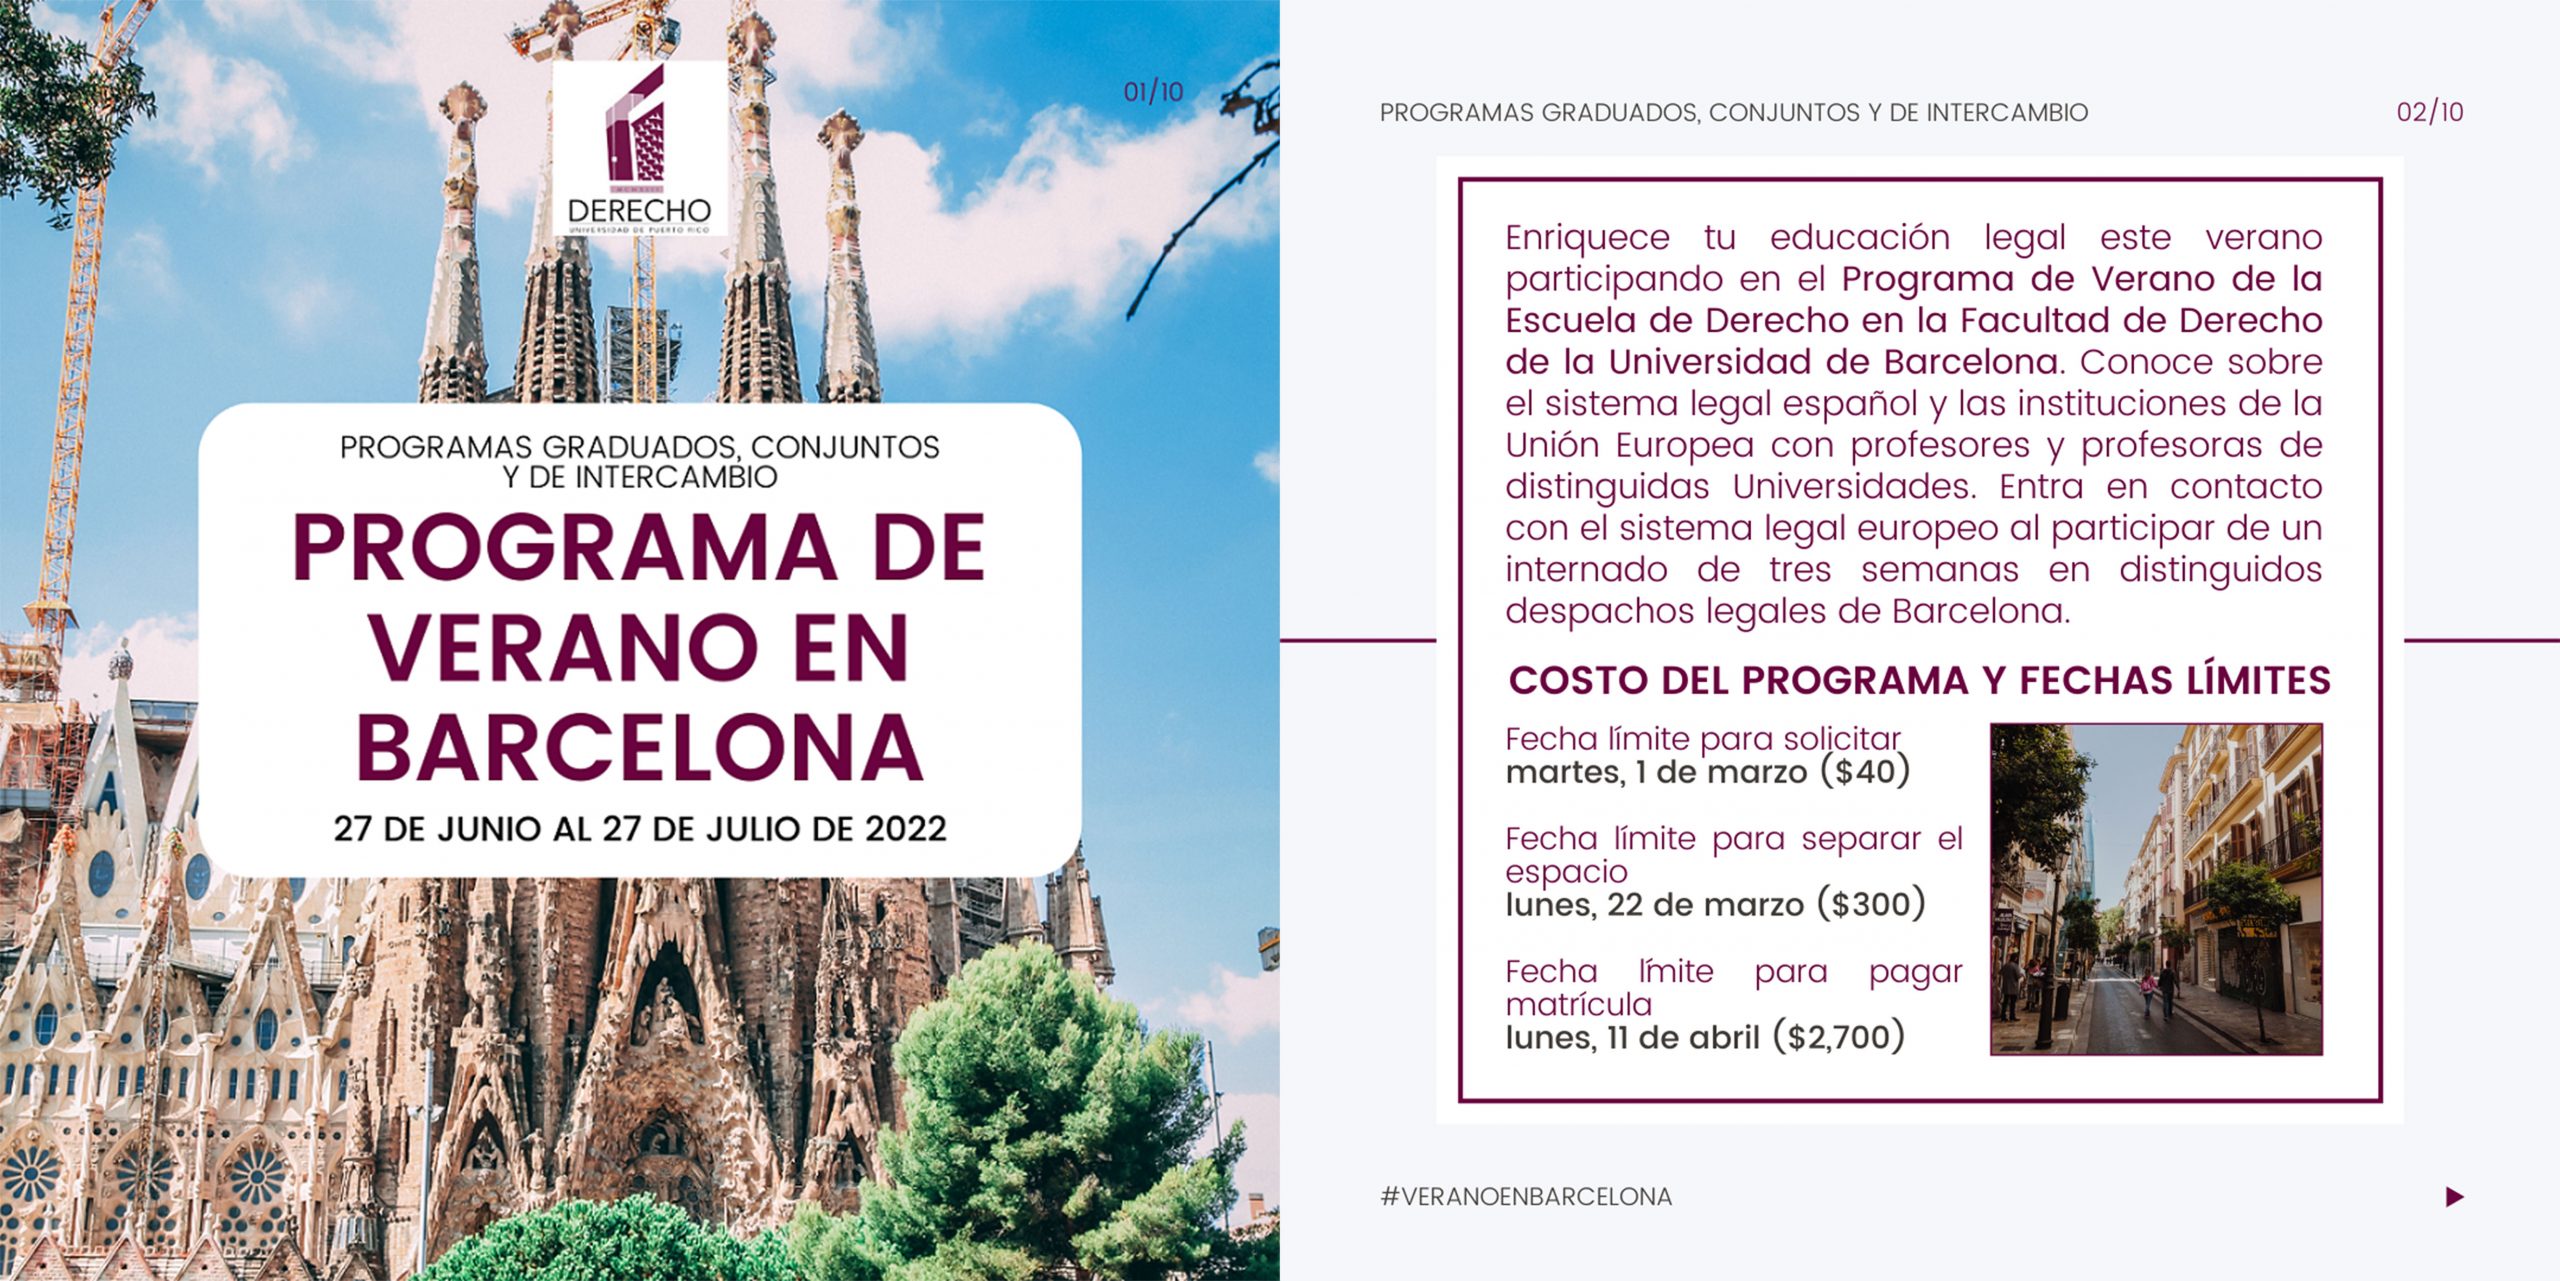 Promo del Programa de Verano en Barcelona 2022